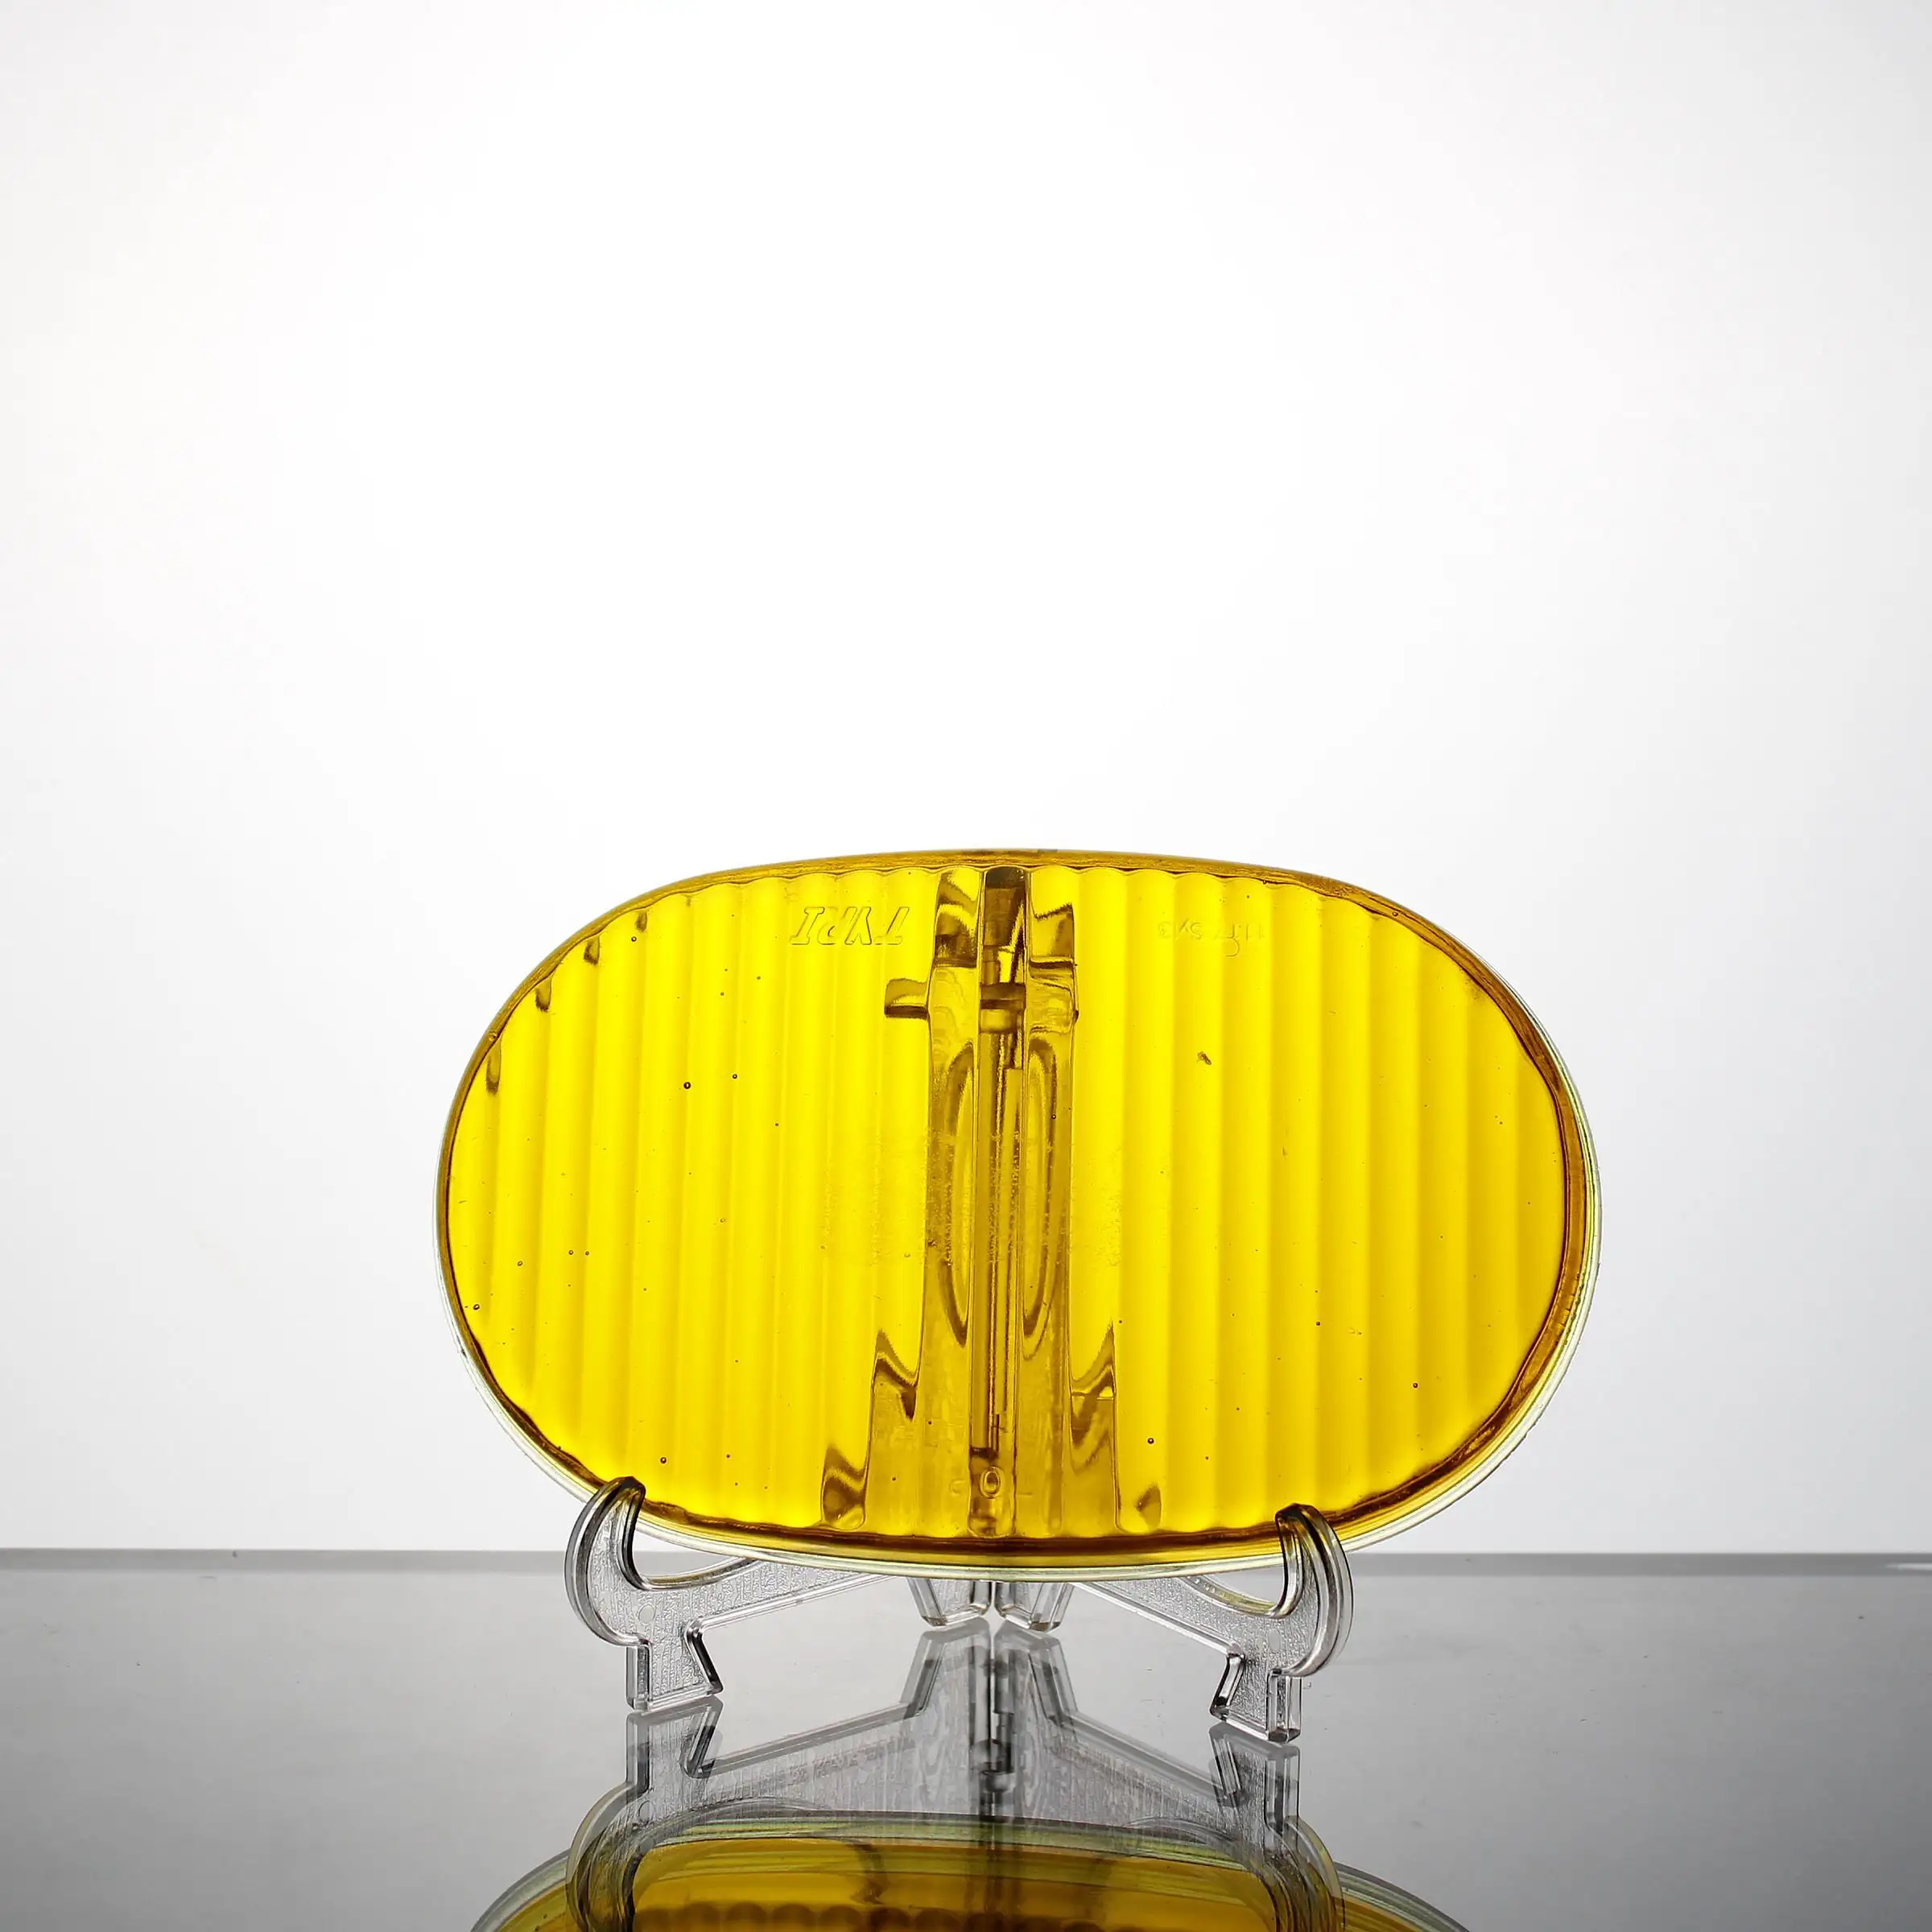 공장 사용자 정의 크기 모양 색상 금형 압축 내열성 하이 퀄리티 높은 붕규산 자동차 헤드 라이트 유리 램프 커버